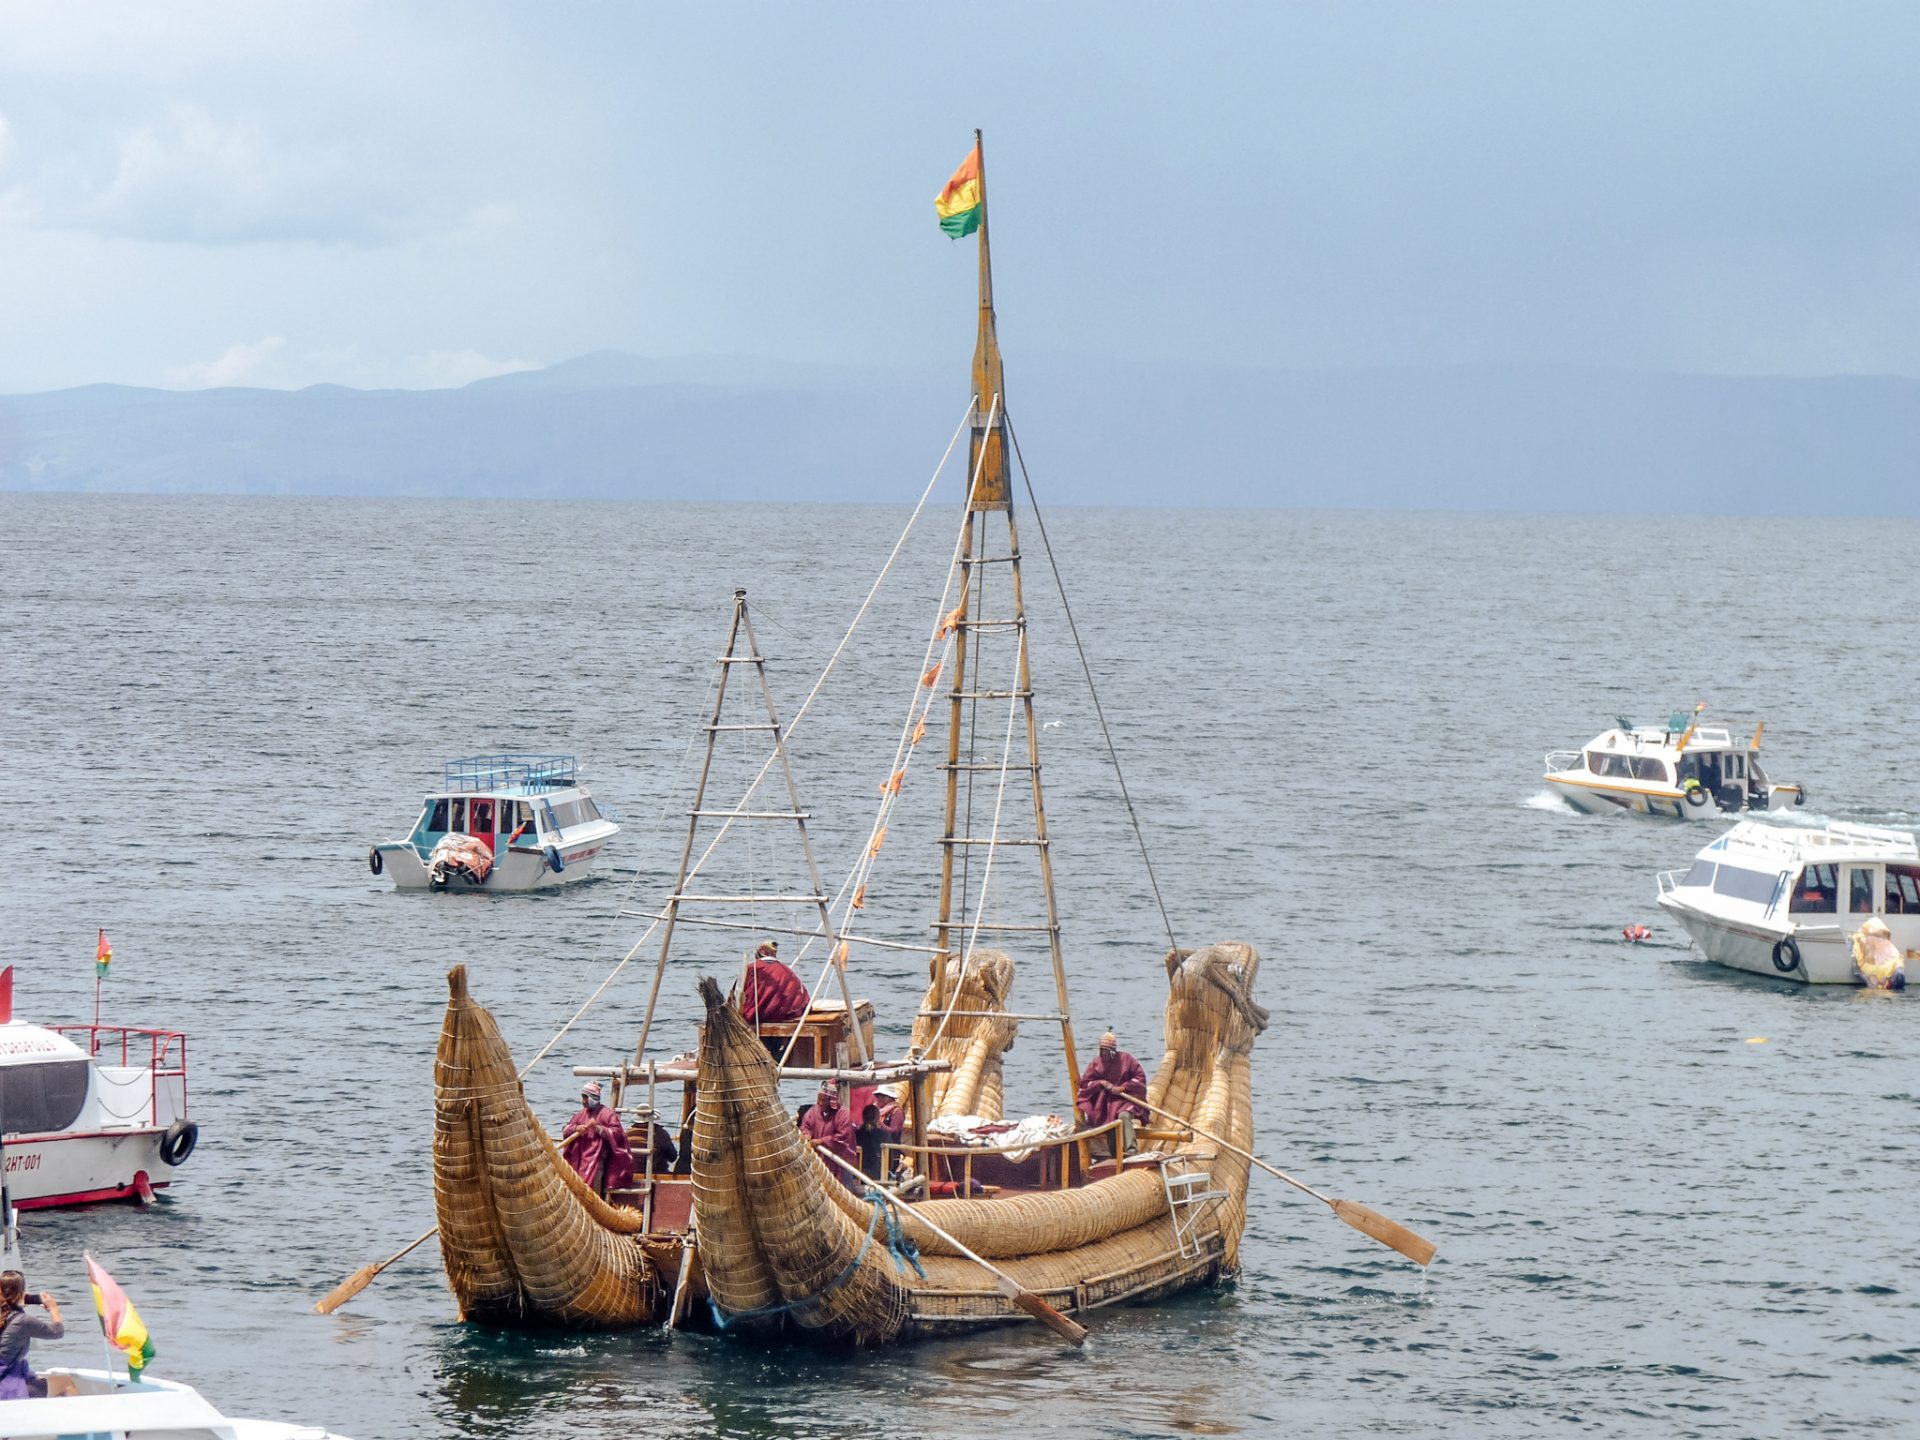 bateau lac titicaca